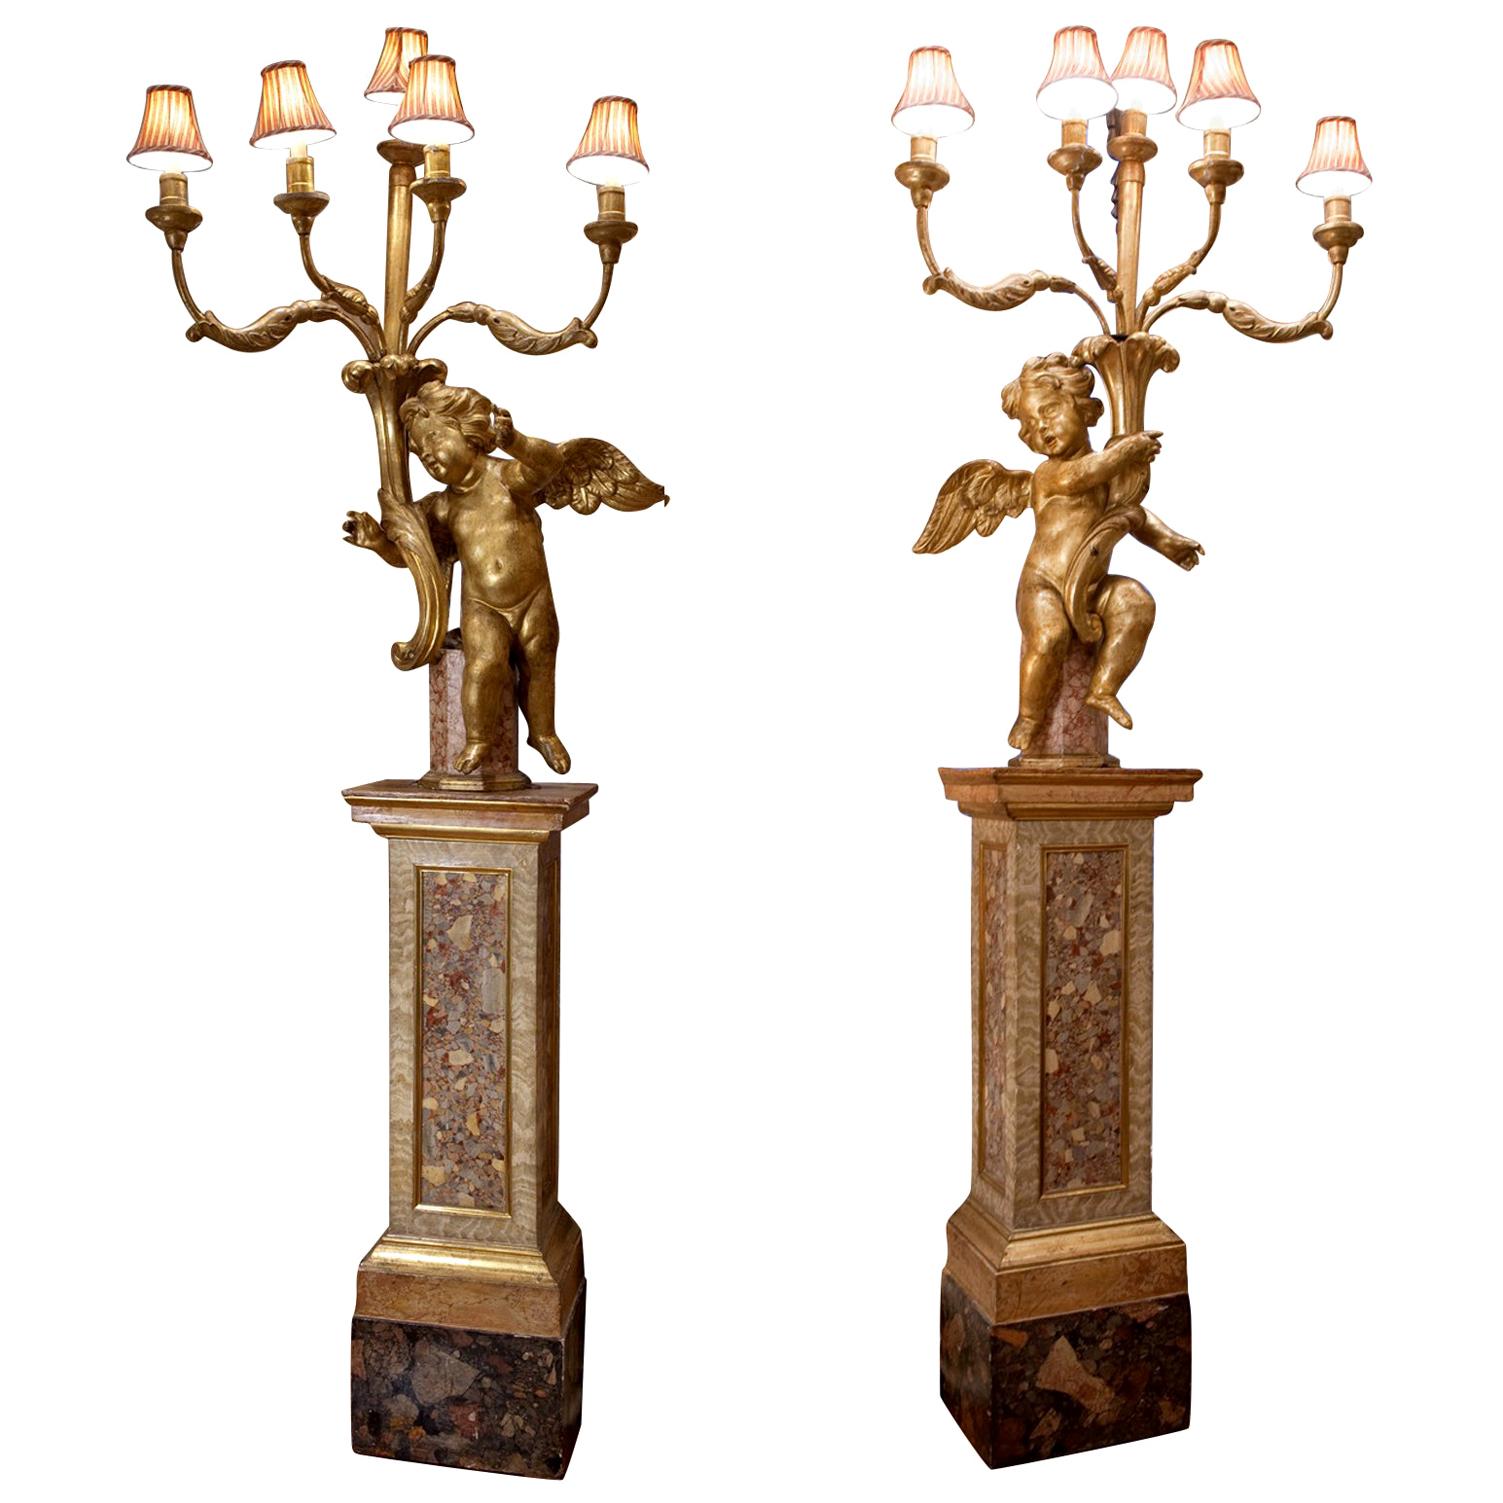 La paire de torches est composée d'un chérubin ou d'un putto en bois doré qui tient en l'air cinq bras de bougie en bois doré. Les personnages reposent sur des socles en bois peints en faux marbre. Les figures sont de taille identique mais sont